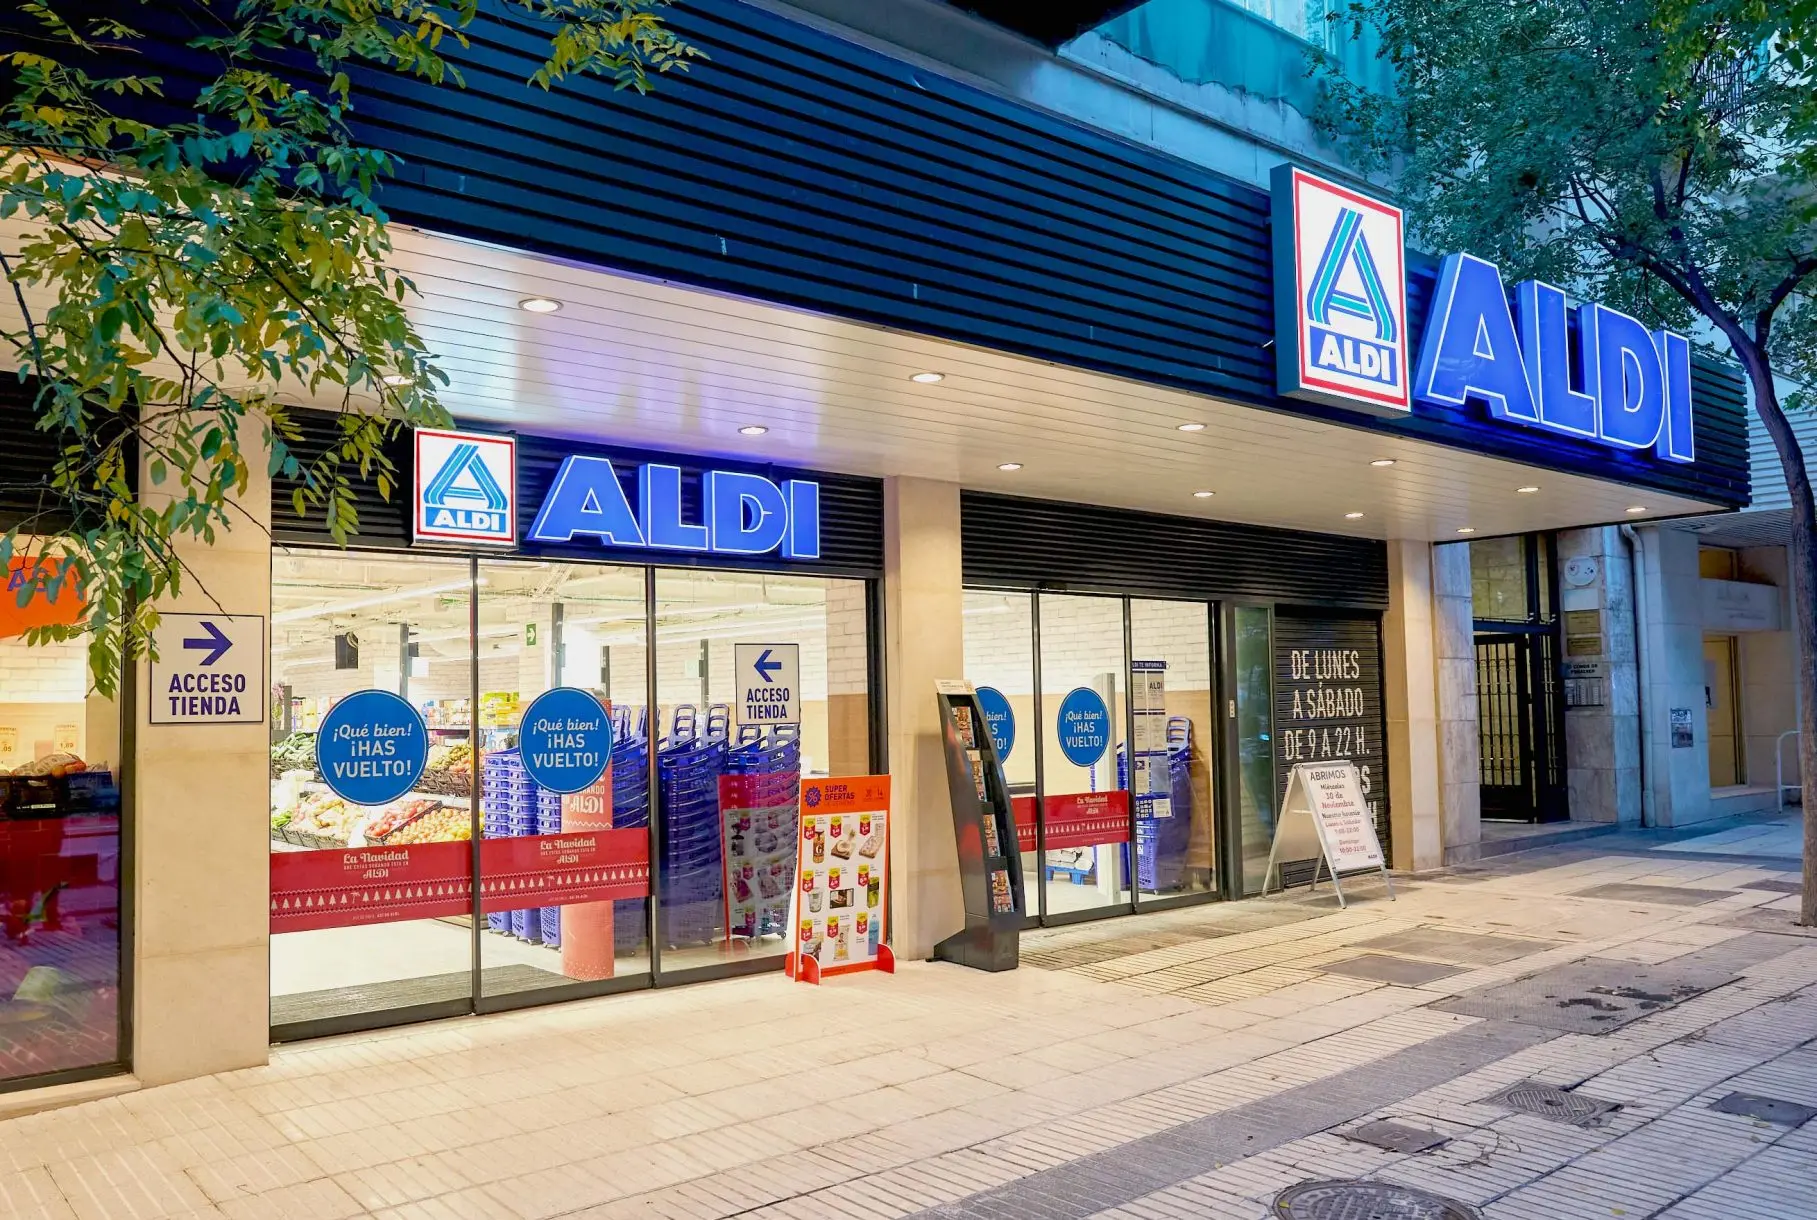 encuadernadora aldi - Cuántas tiendas de Aldi hay en España